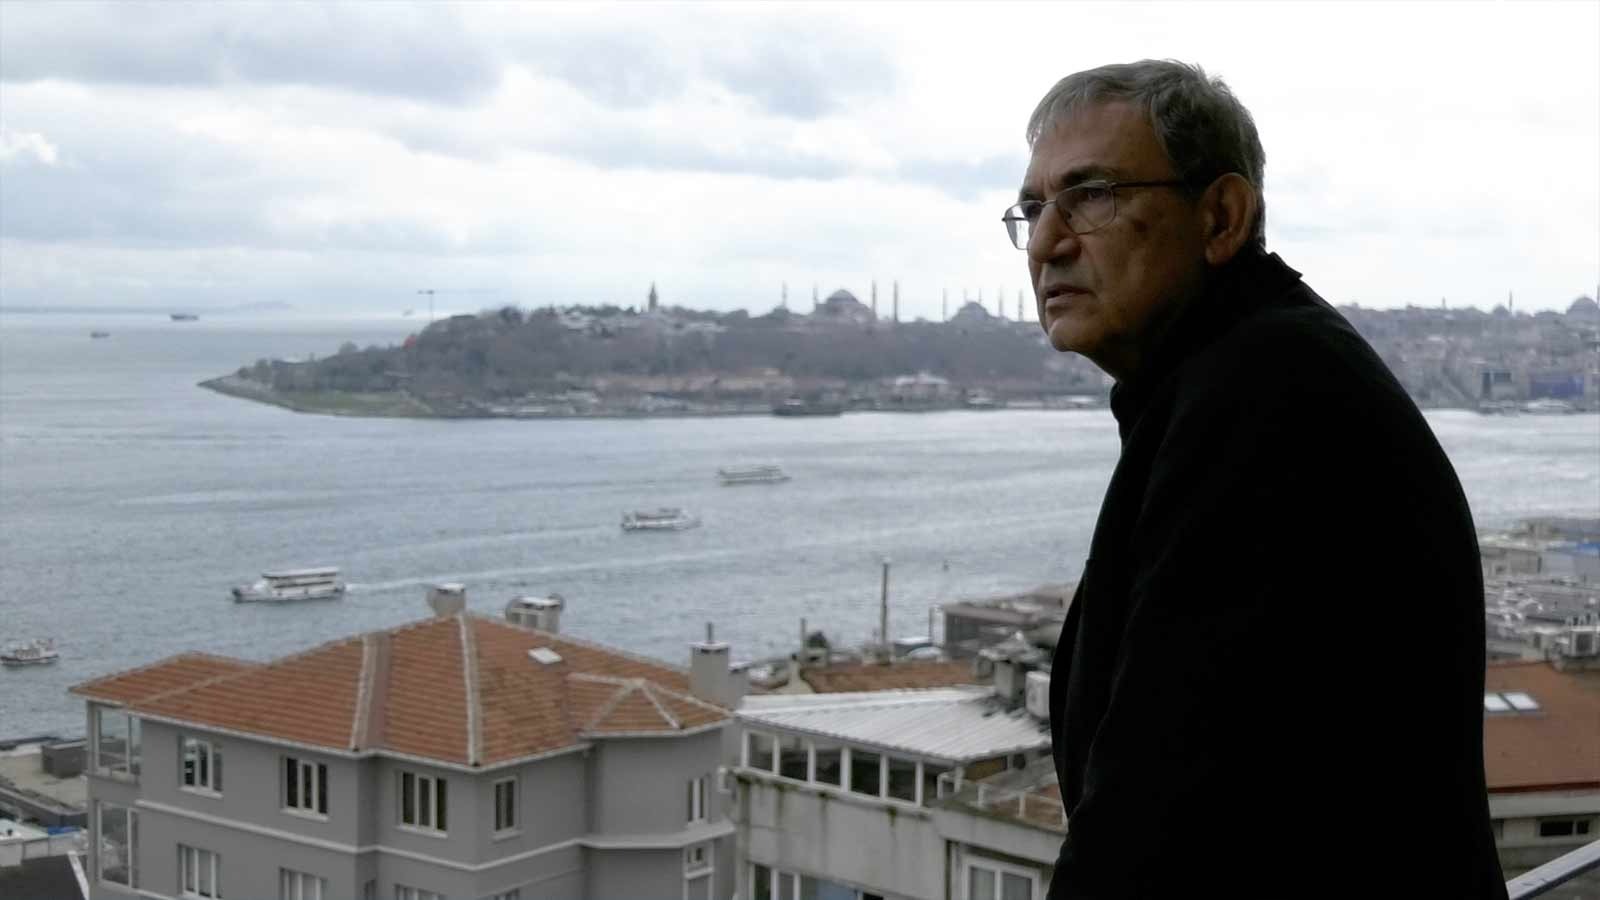 Օրհան Փամուք. «Թուրքիայում չկա՛ ժողովրդավարություն, չկա՛ մտքի ազատություն»